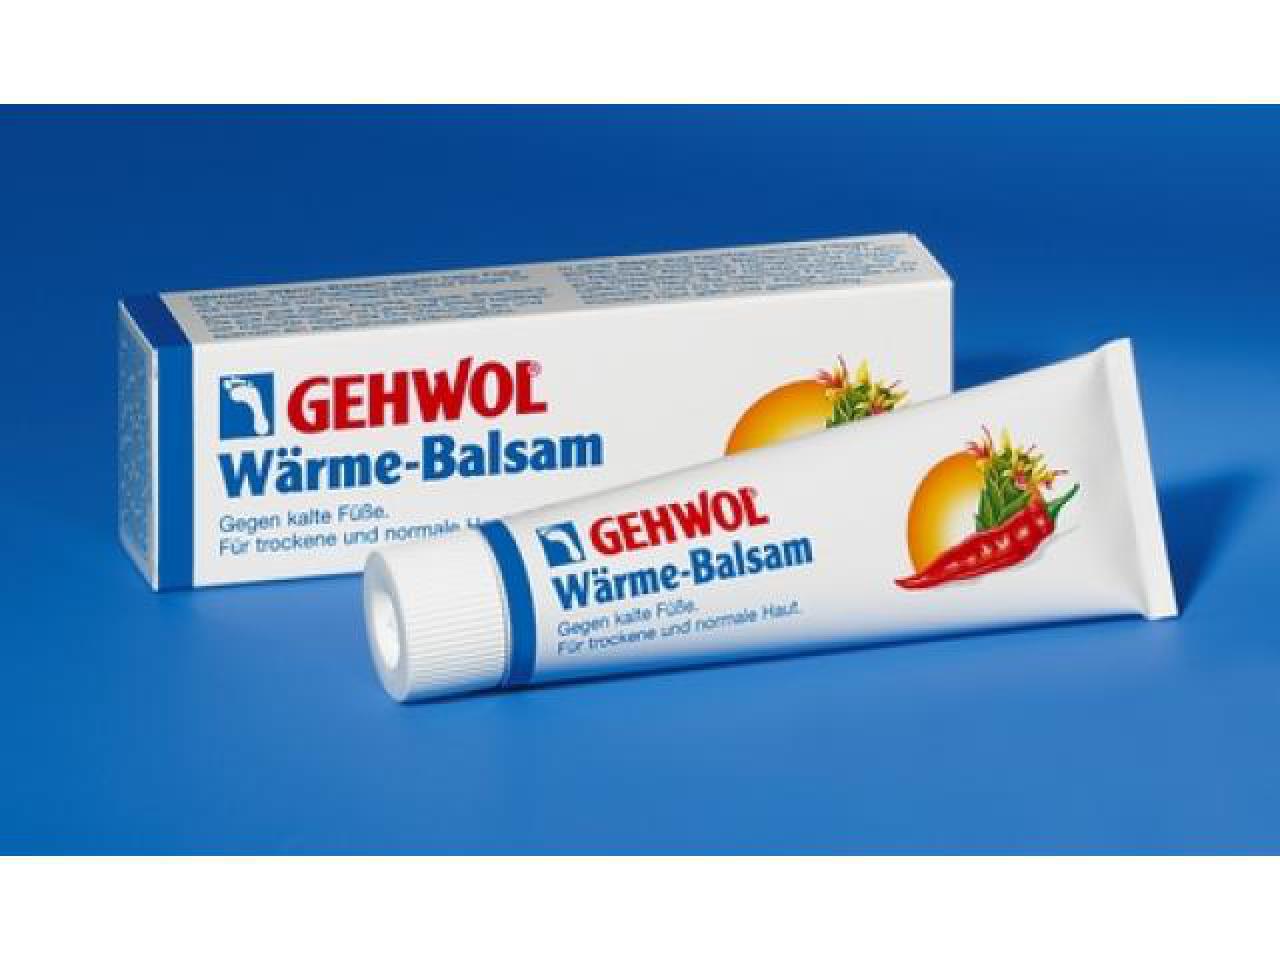 GEHWOL Wärme-Balsam 75 mg Tube